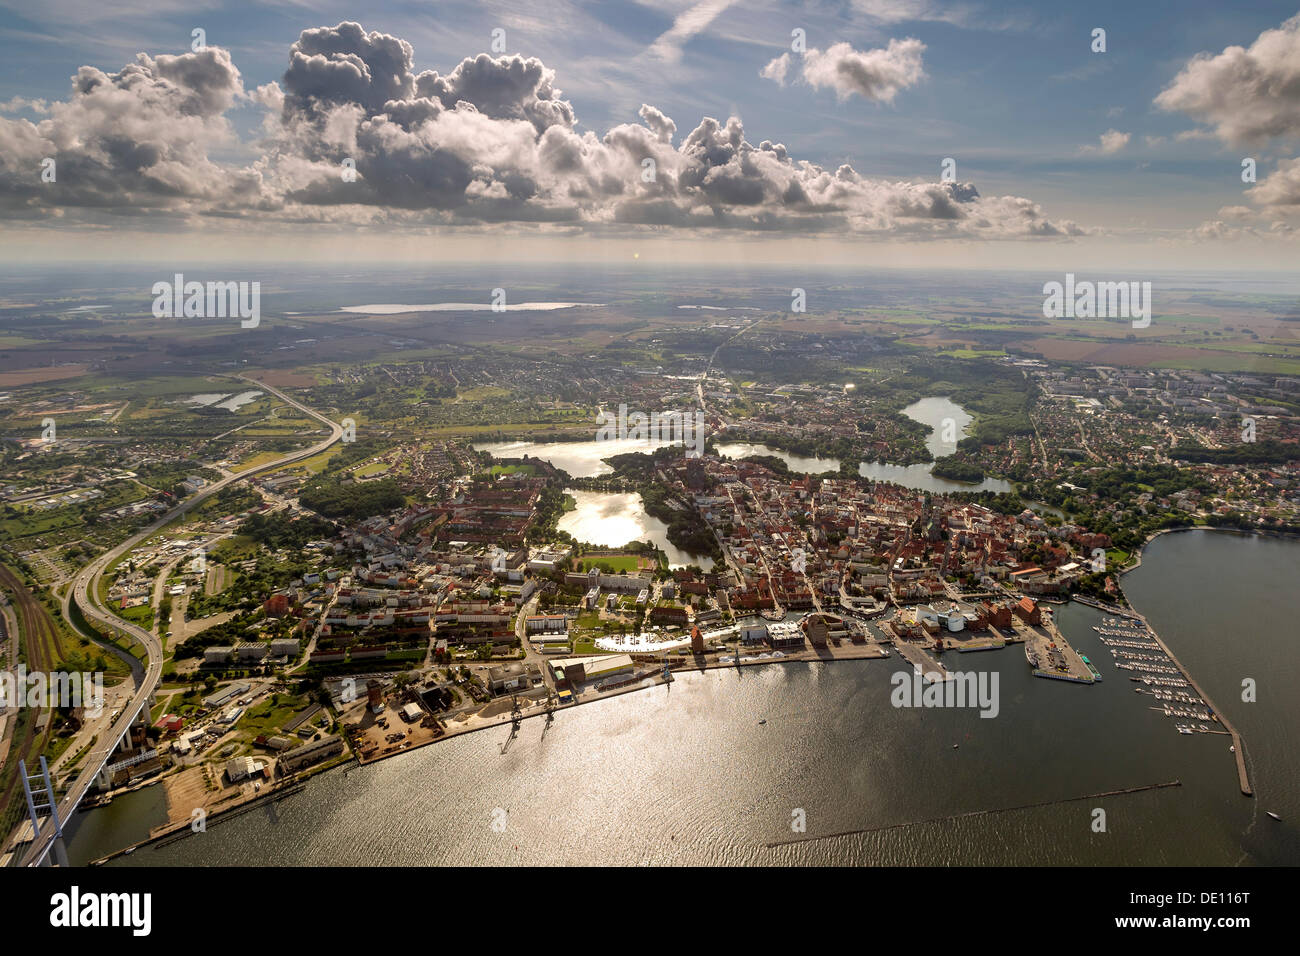 Luftaufnahme, Hafen, Yachthafen mit das deutsche Meeresmuseum und das Ozeaneum Aquarium, alte Stadt-Insel, umgeben von Wasser Stockfoto